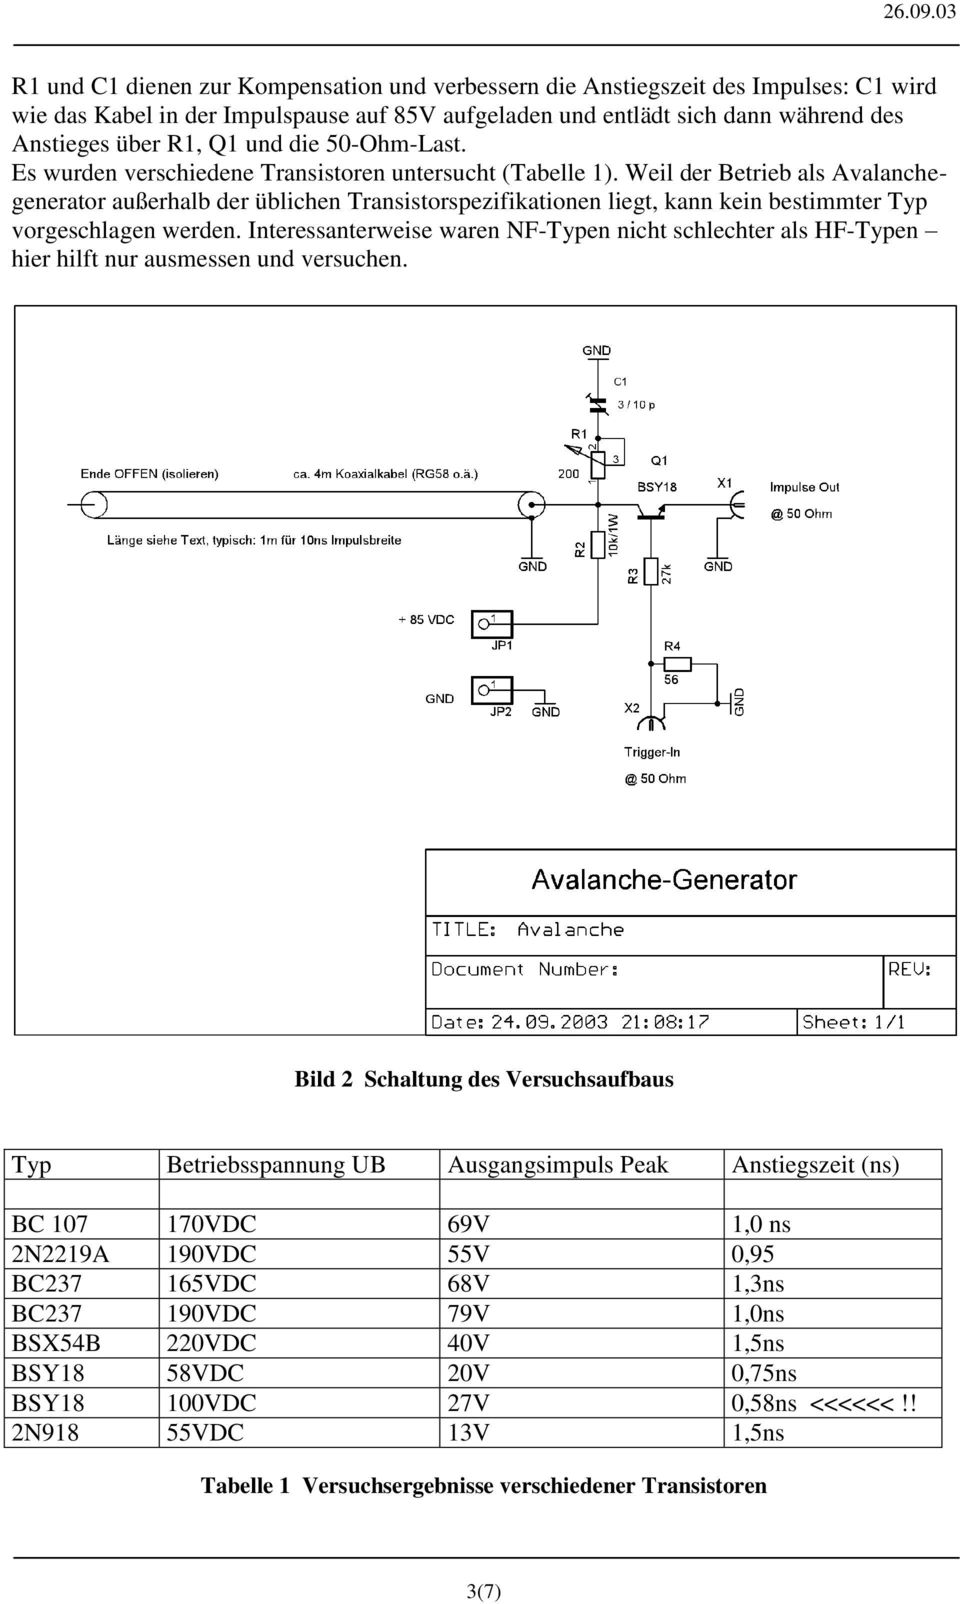 Weil der Betrieb als Avalanchegenerator außerhalb der üblichen Transistorspezifikationen liegt, kann kein bestimmter Typ vorgeschlagen werden.